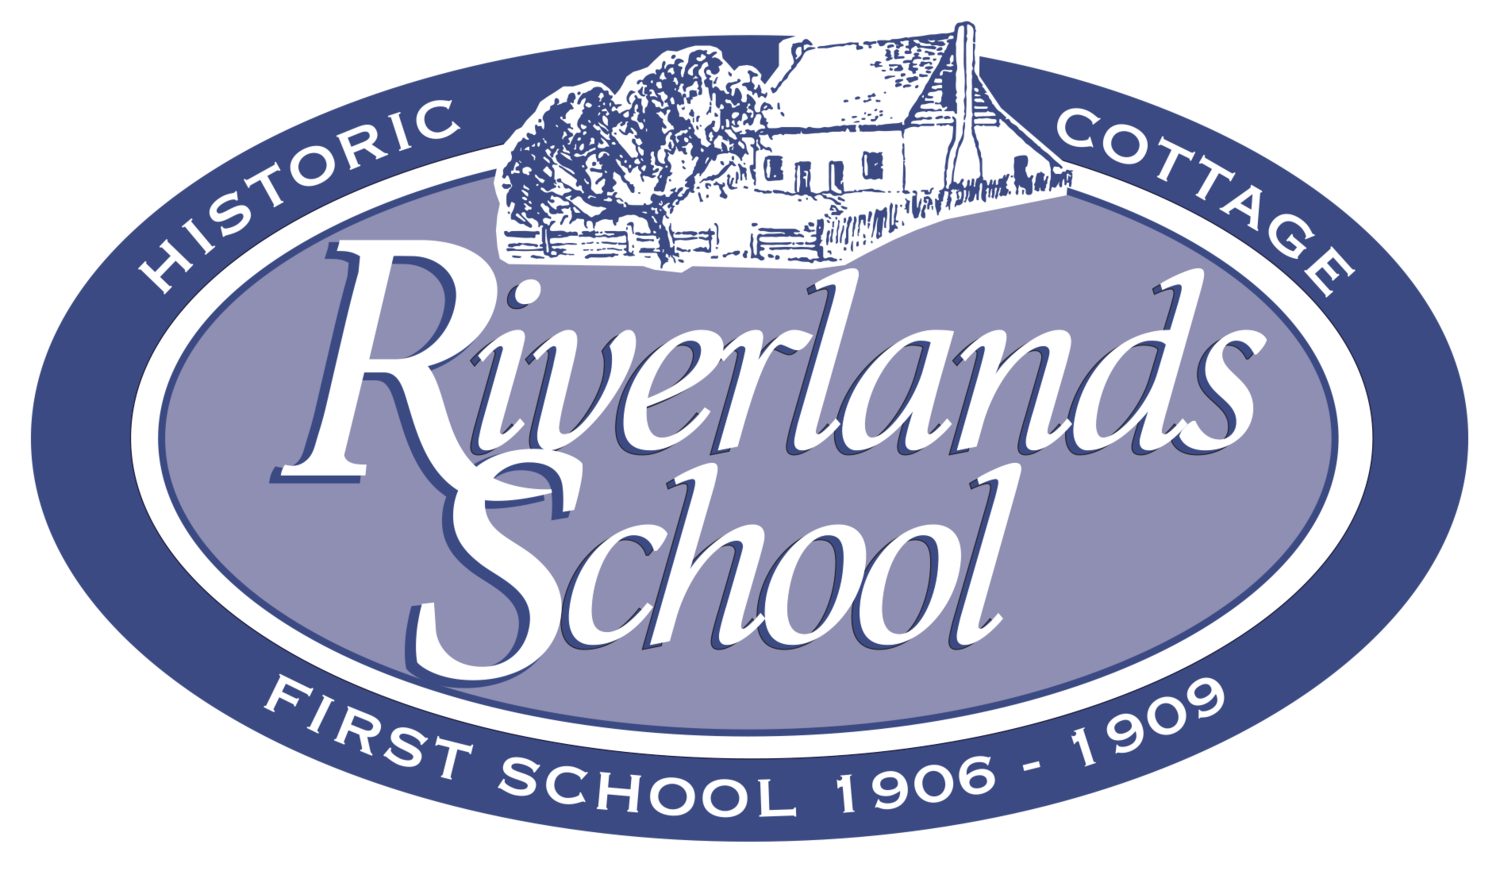 Riverlands School